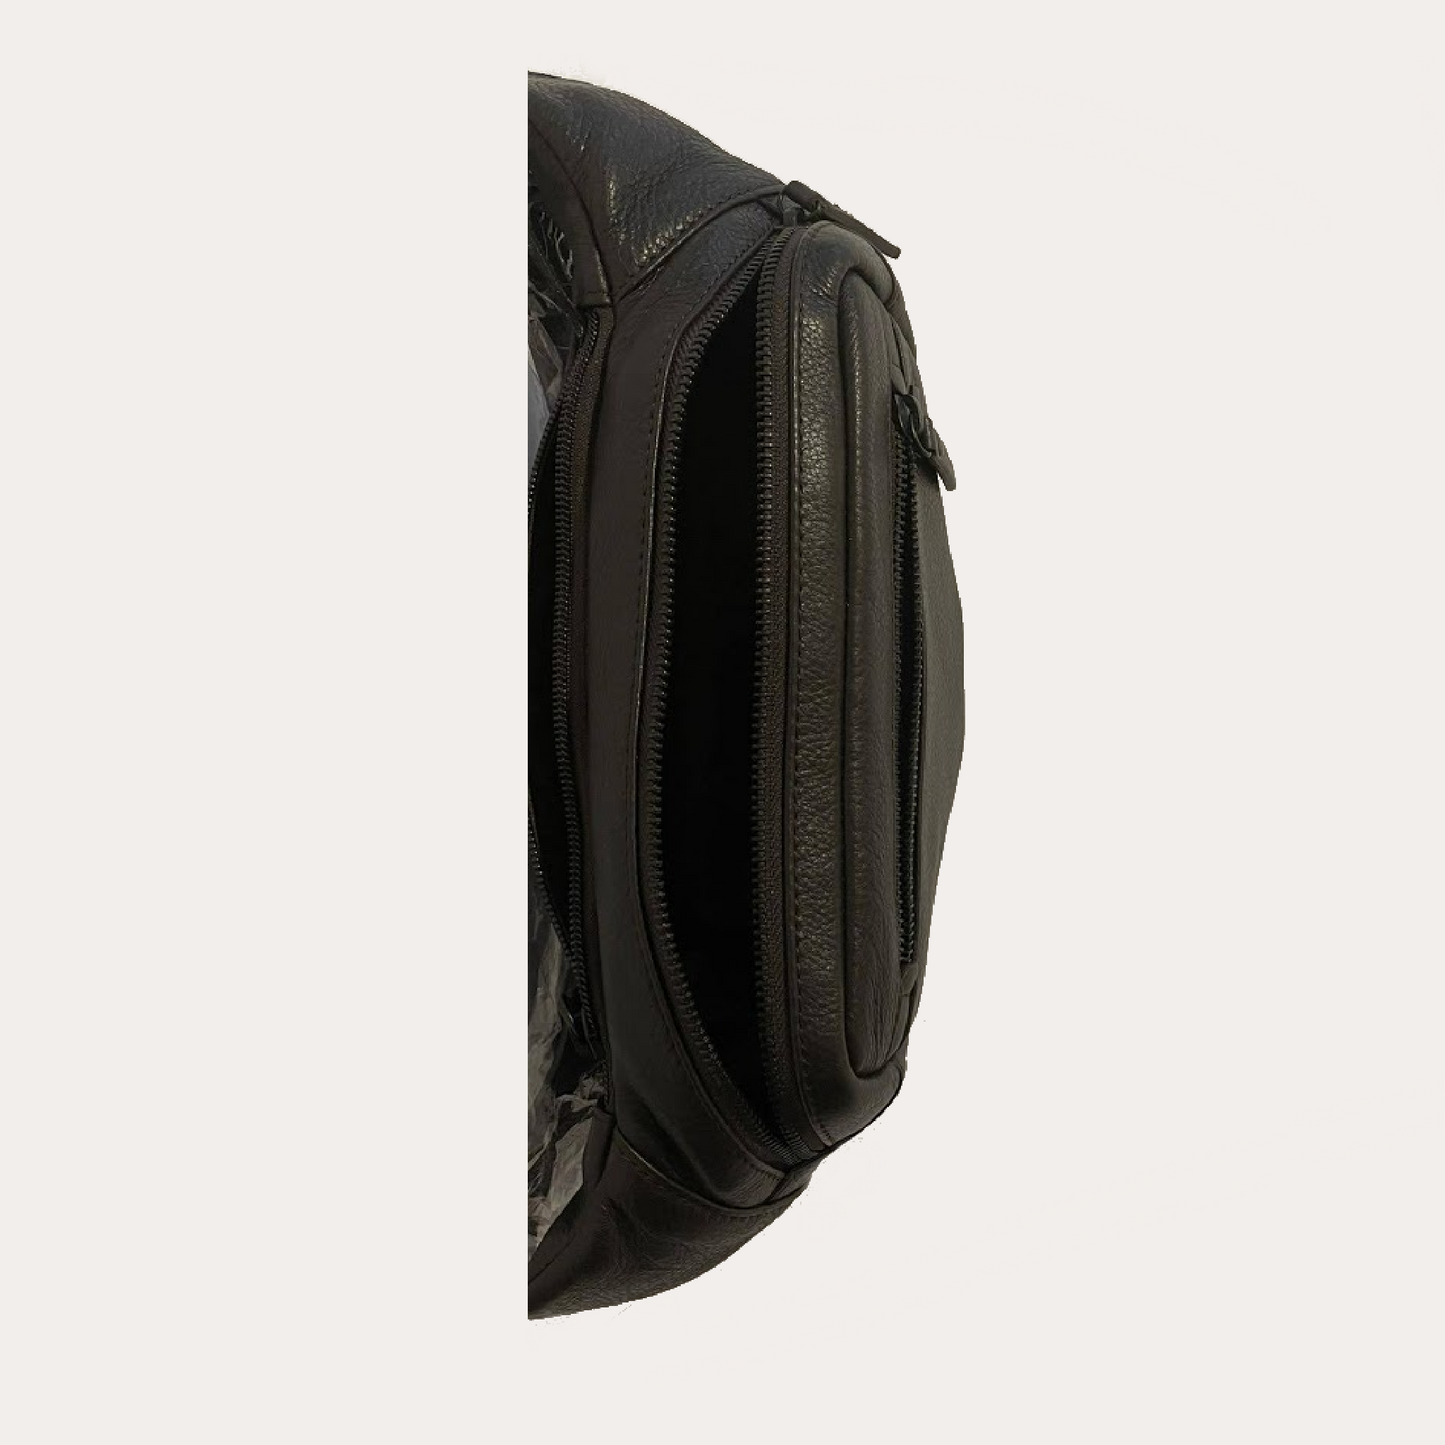 Gianni Conti Dark Brown Leather Bum Bag